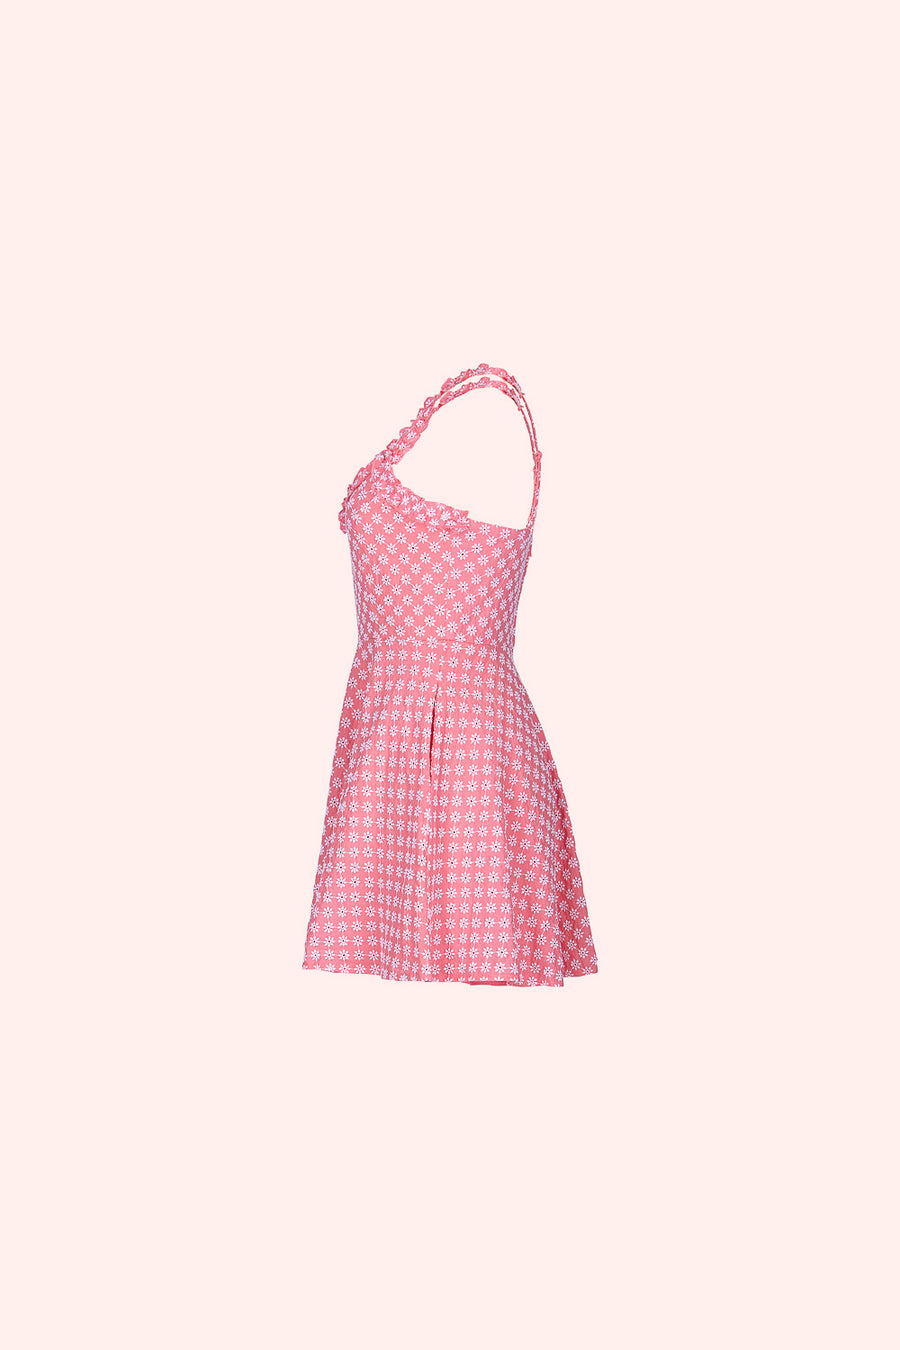 Coral Ruffle Eyelet Dress - Trixxi Clothing